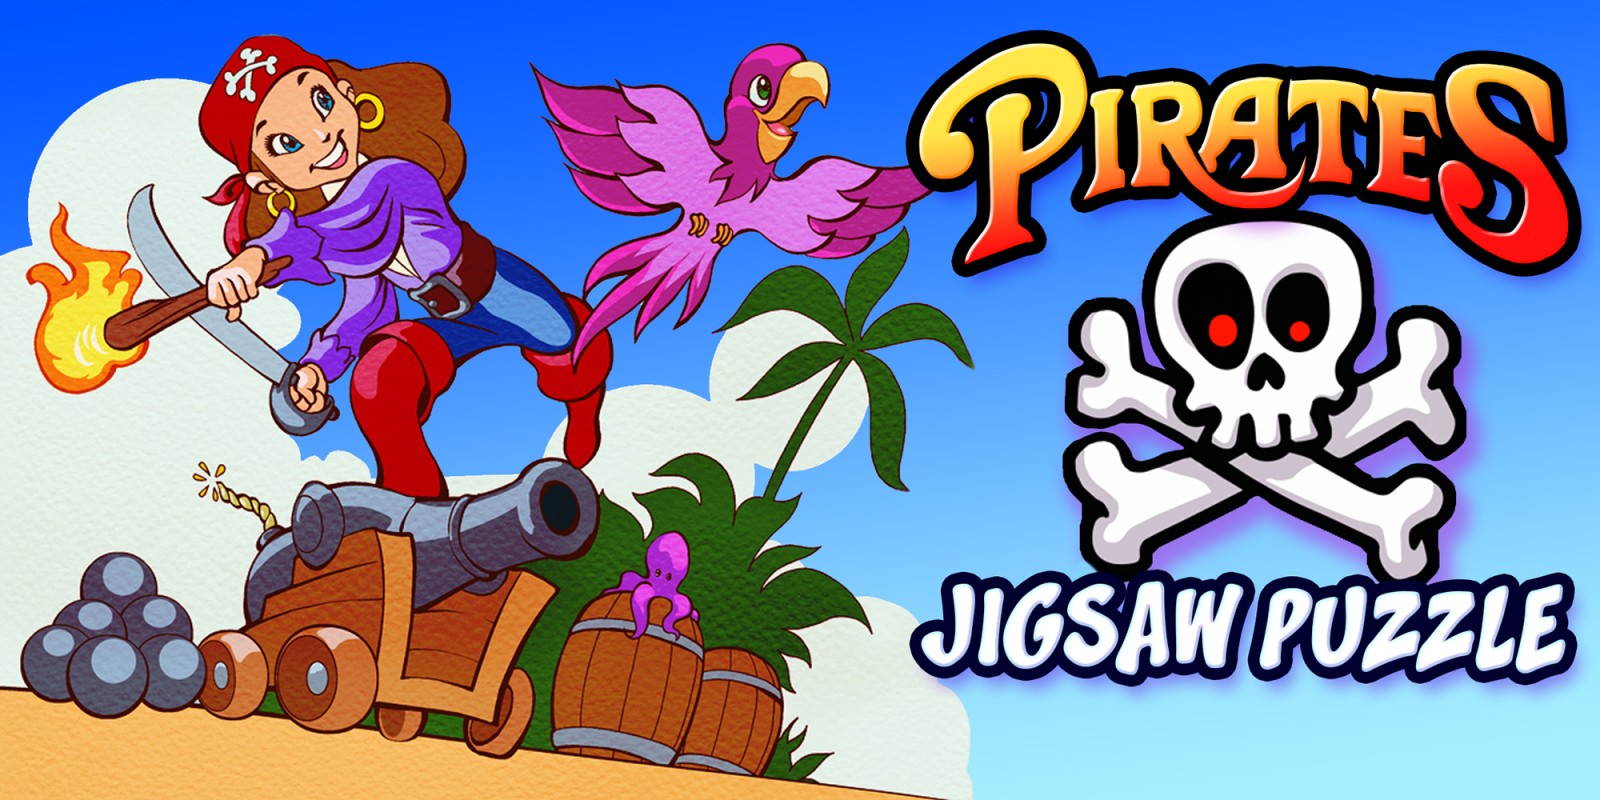 Pirates Jigsaw Puzzle - Piraten Abenteuer Puzzles Intelligenz Lernspiel Bildung & Lernen Puzzlespiele für Kinder & Kleinkinder